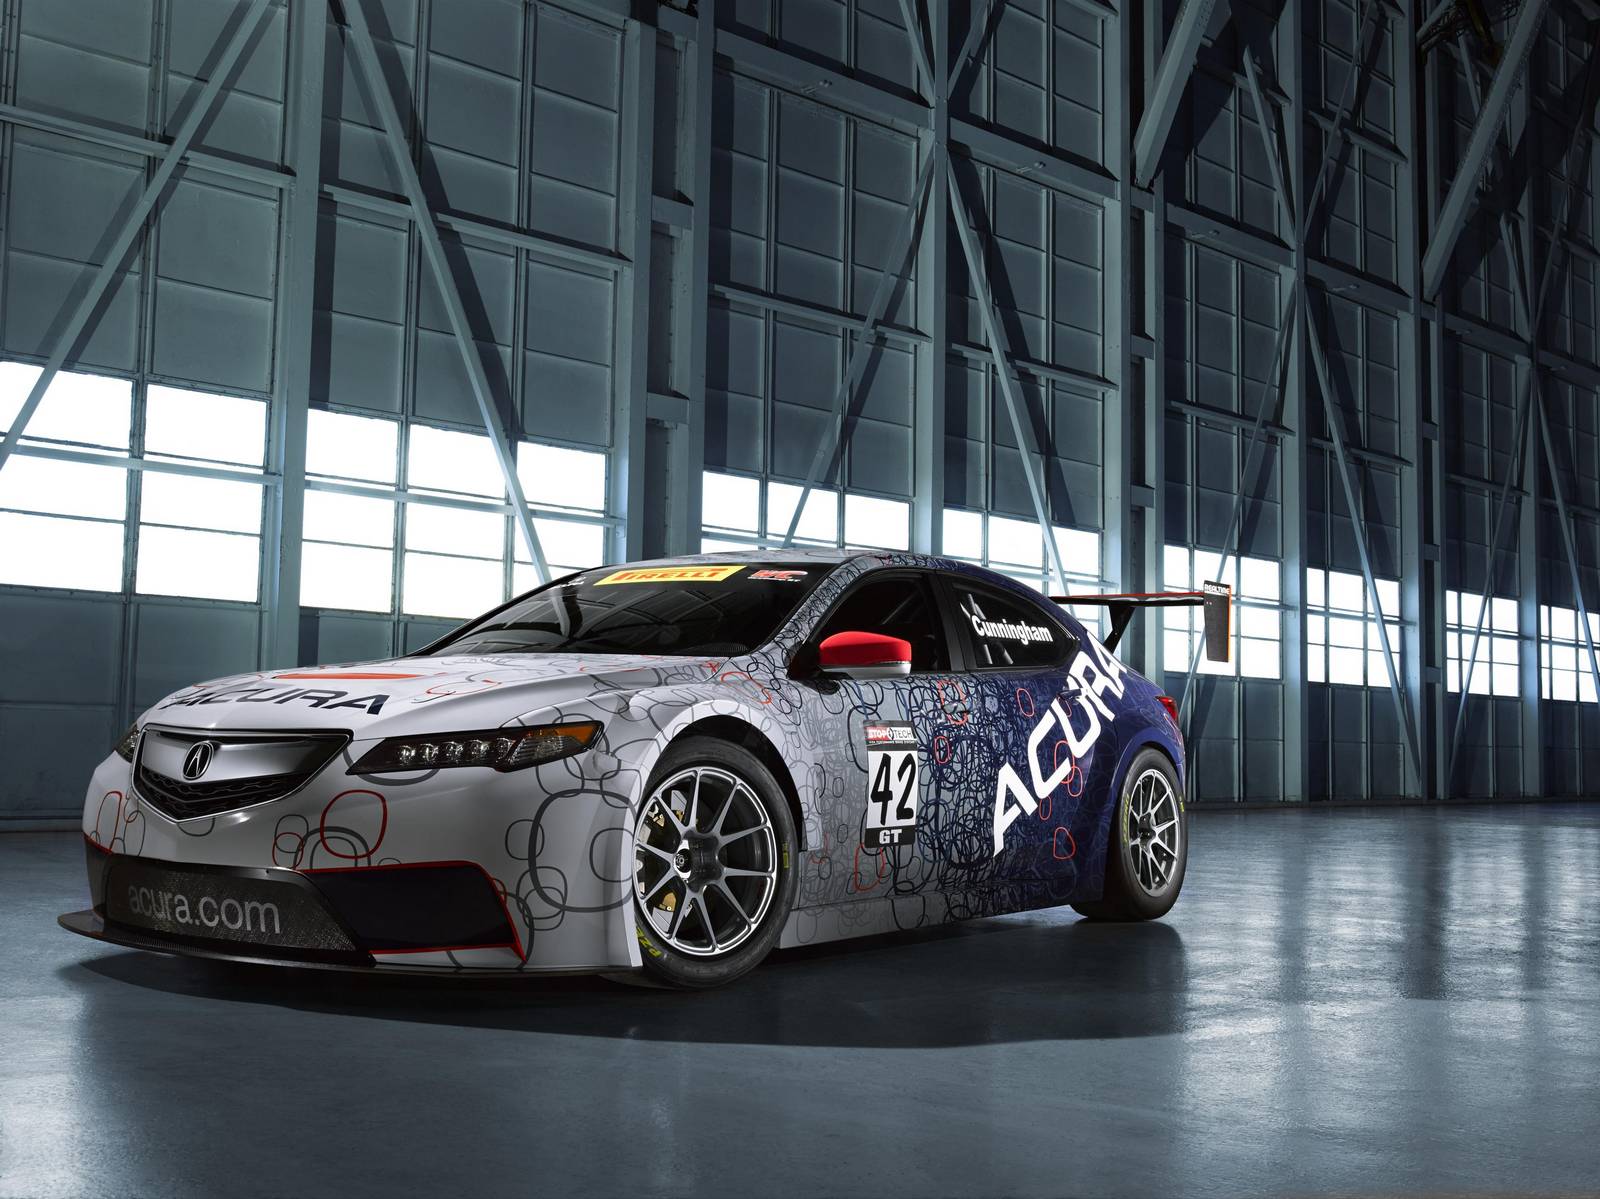 Official: 2015 Acura TLX GT Race Car - GTspirit